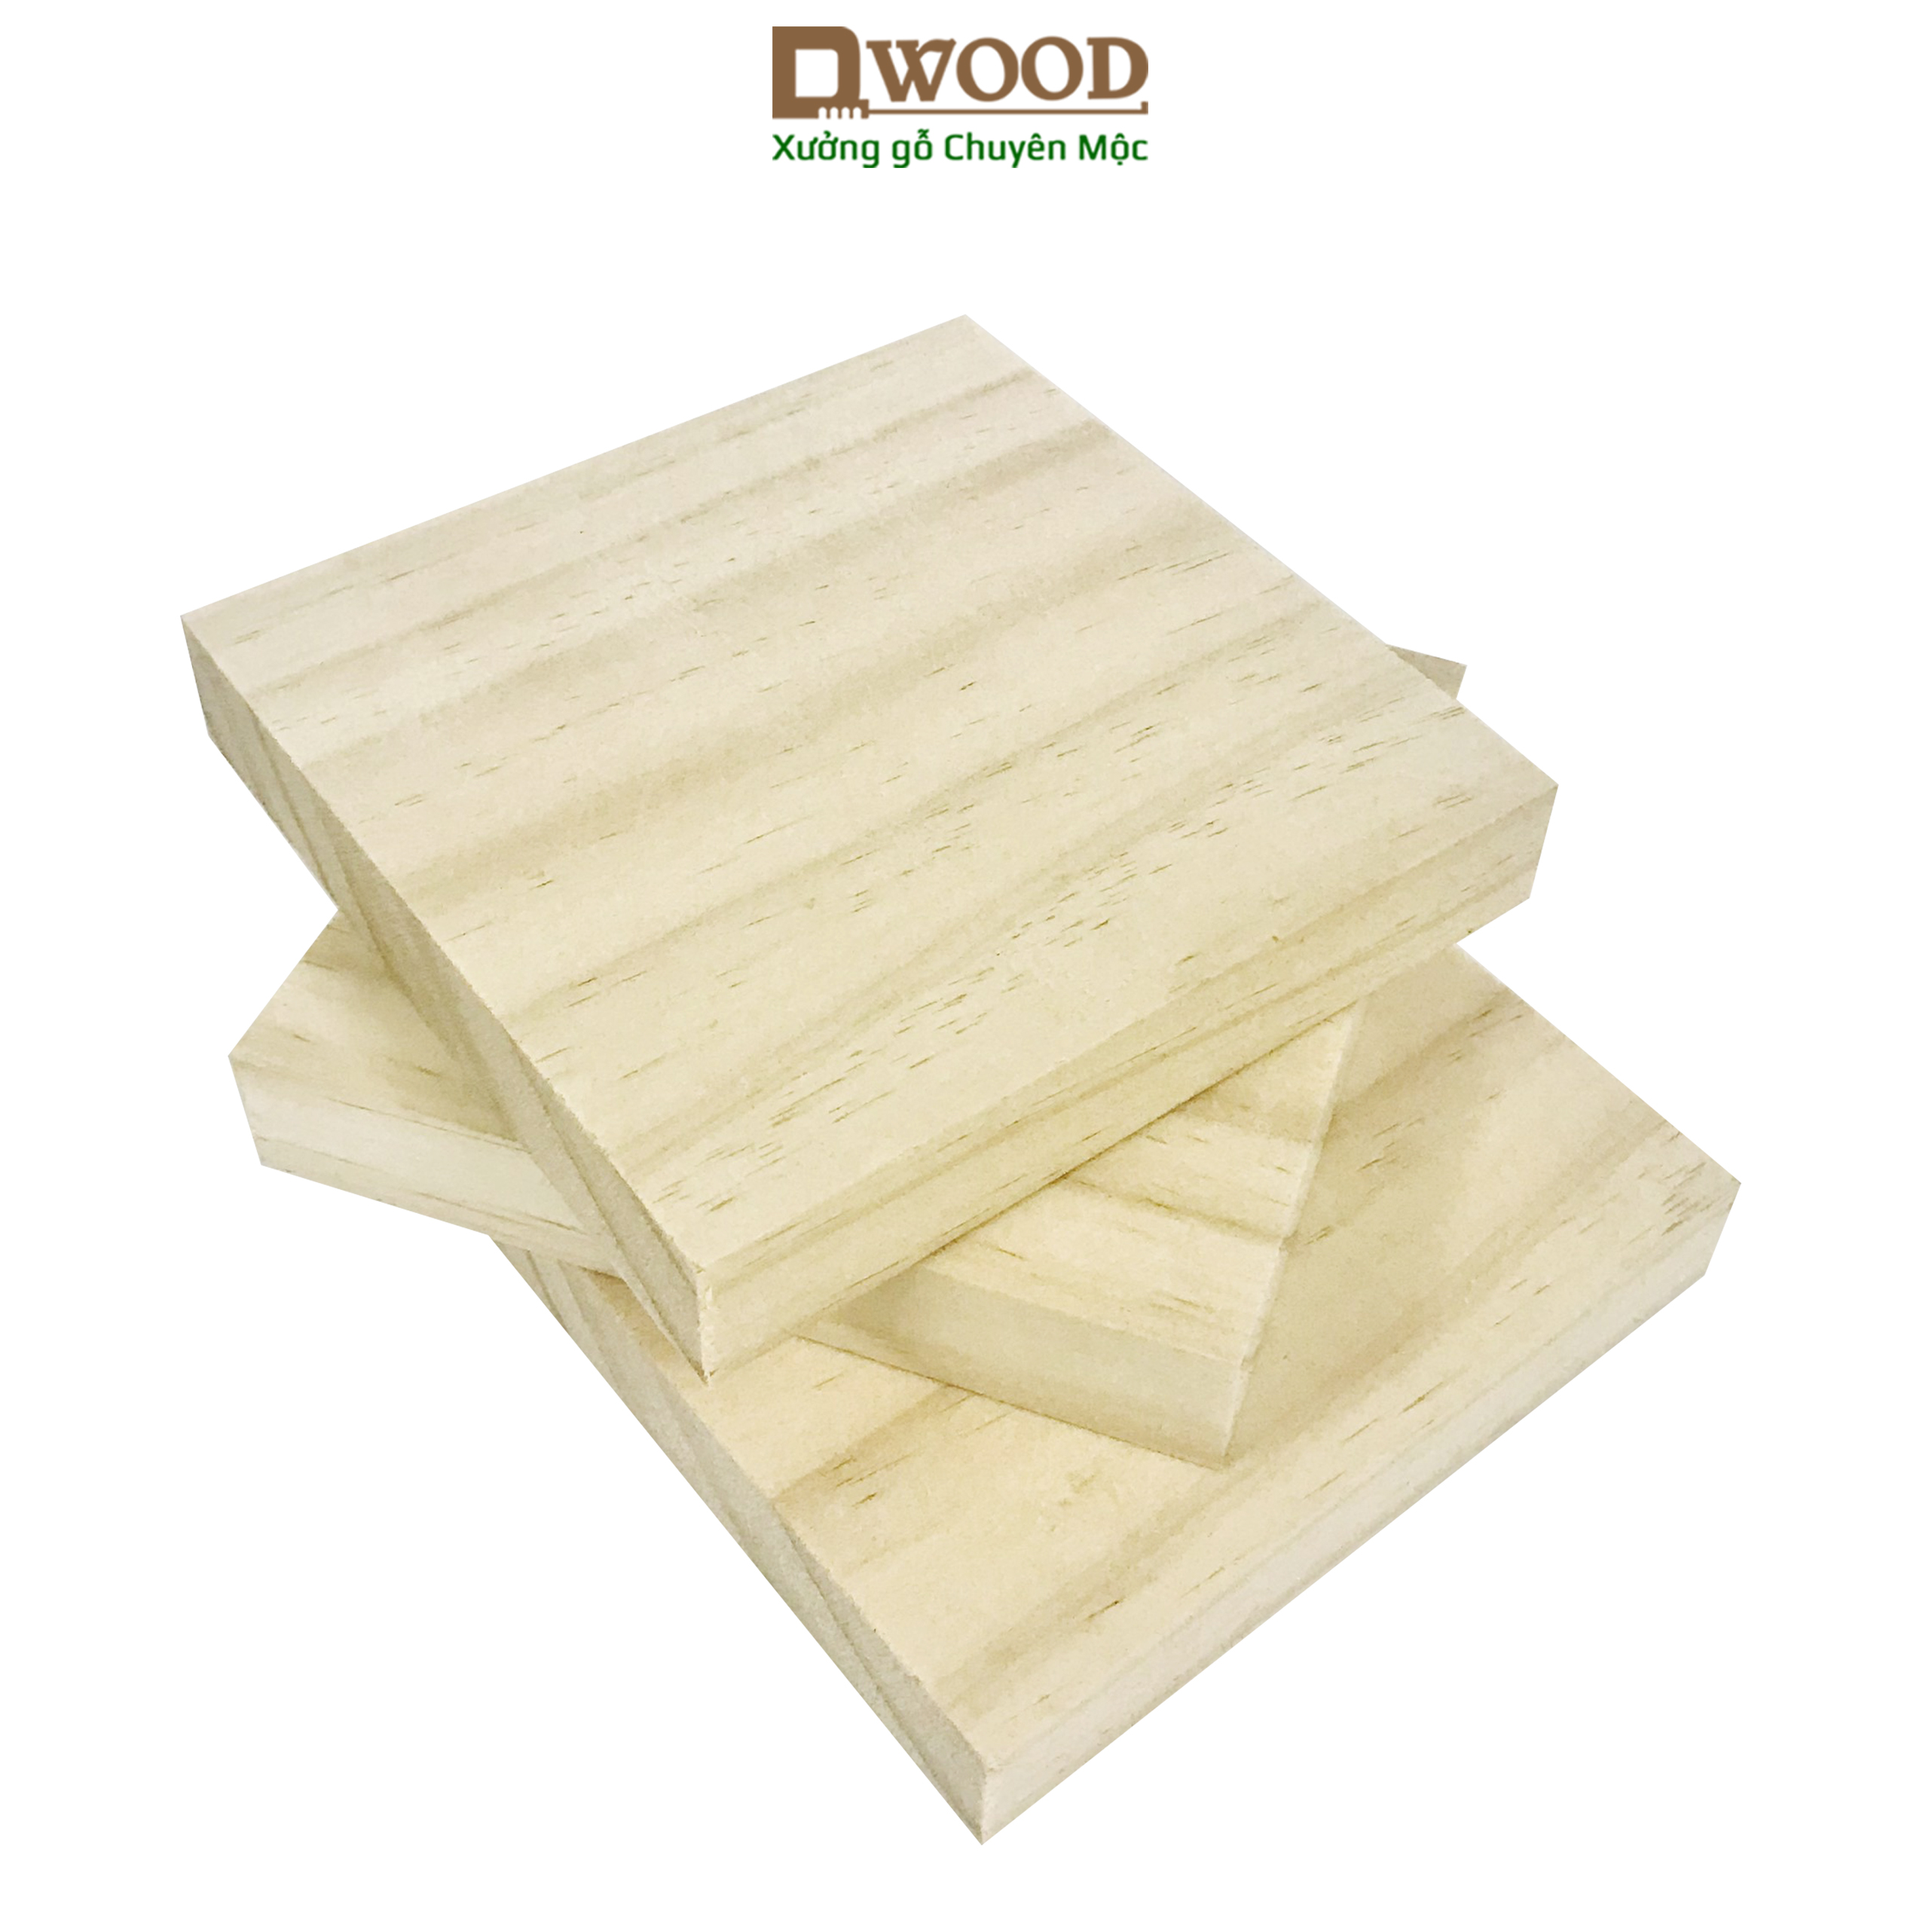 Miếng gỗ vuông Dwood gỗ thông mới nhập khẩu